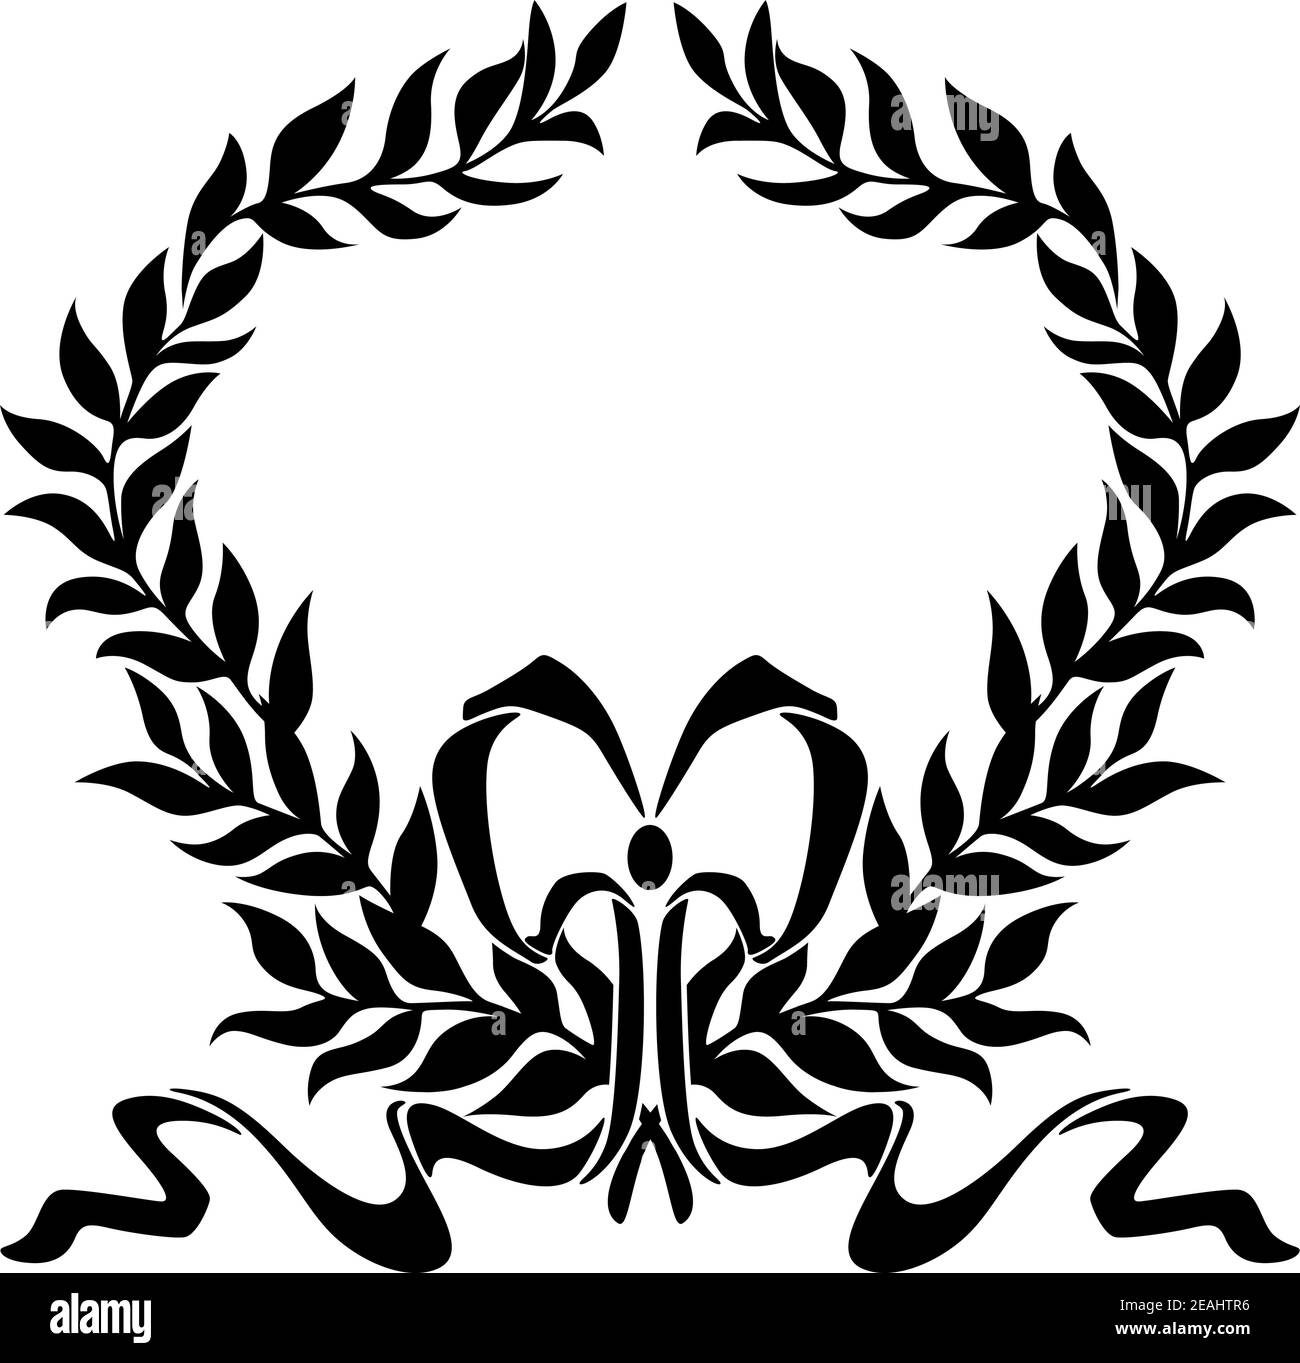 Élément de motif noir et blanc de la couronne de Laurier foliée avec un arc décoratif entourant un espace de rédaction blanc Illustration de Vecteur